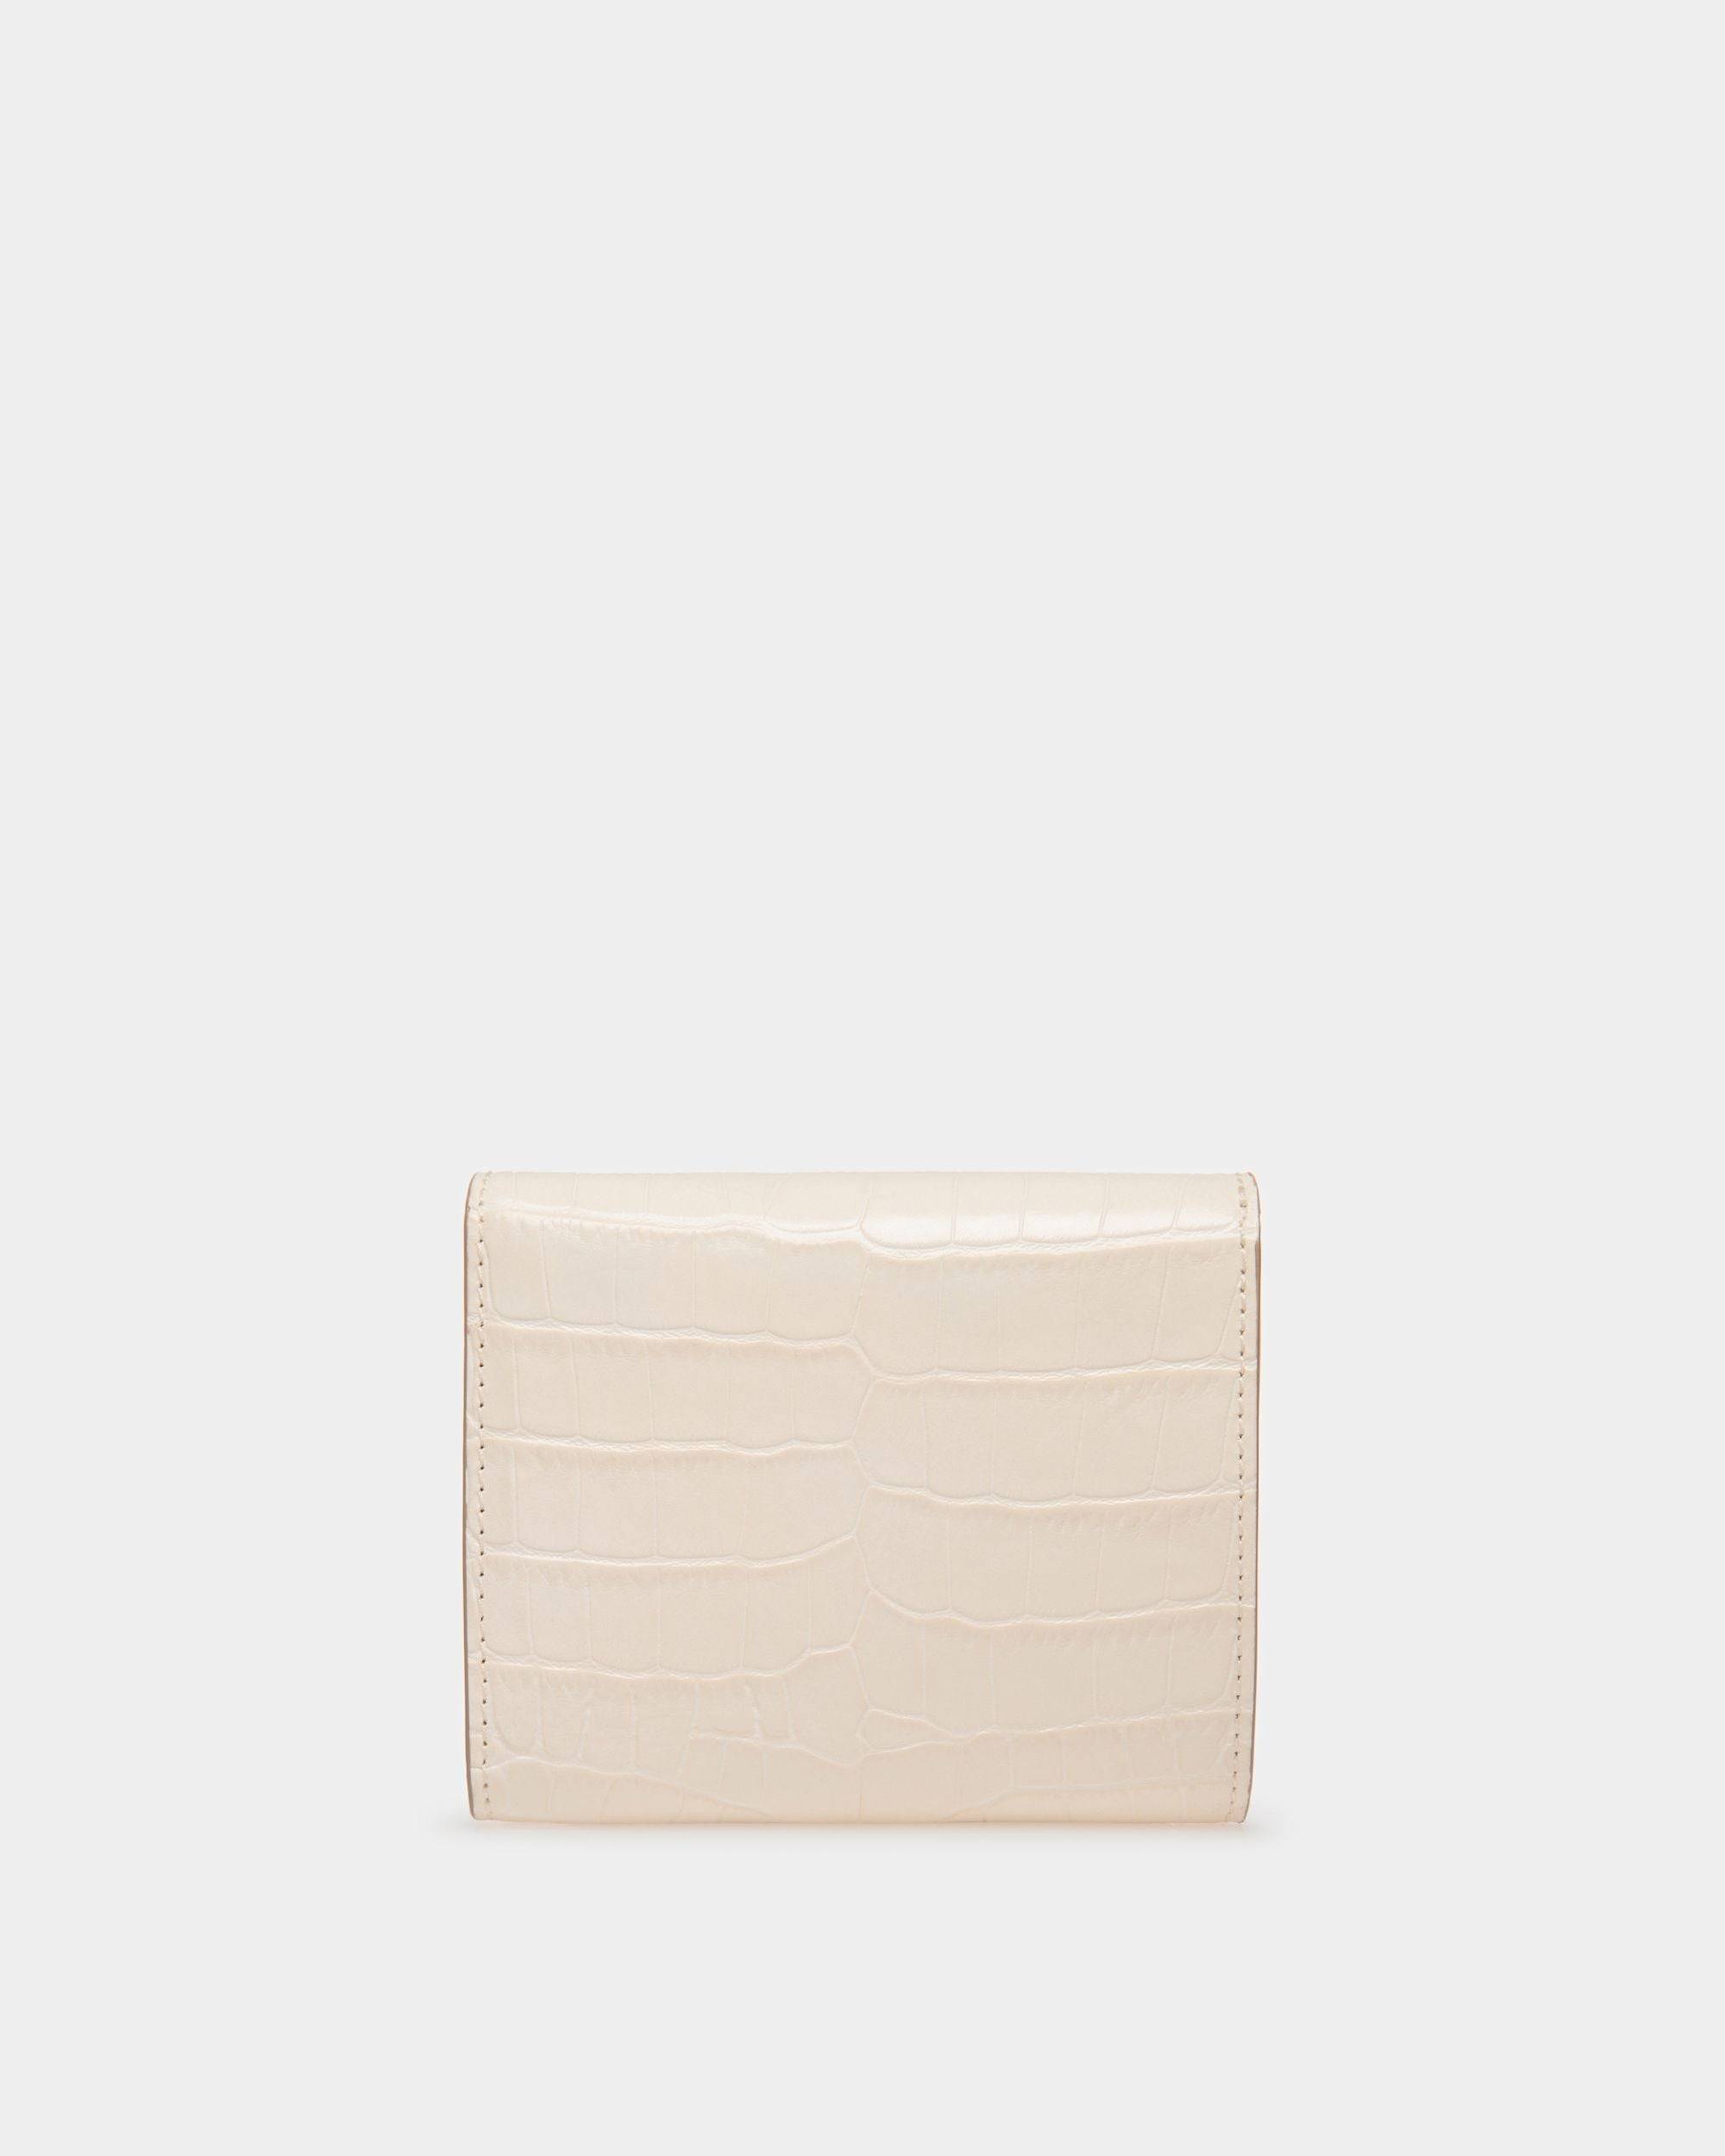 Tilt | Women's Wallet in White Crocodile Print Leather | Bally | Still Life Back